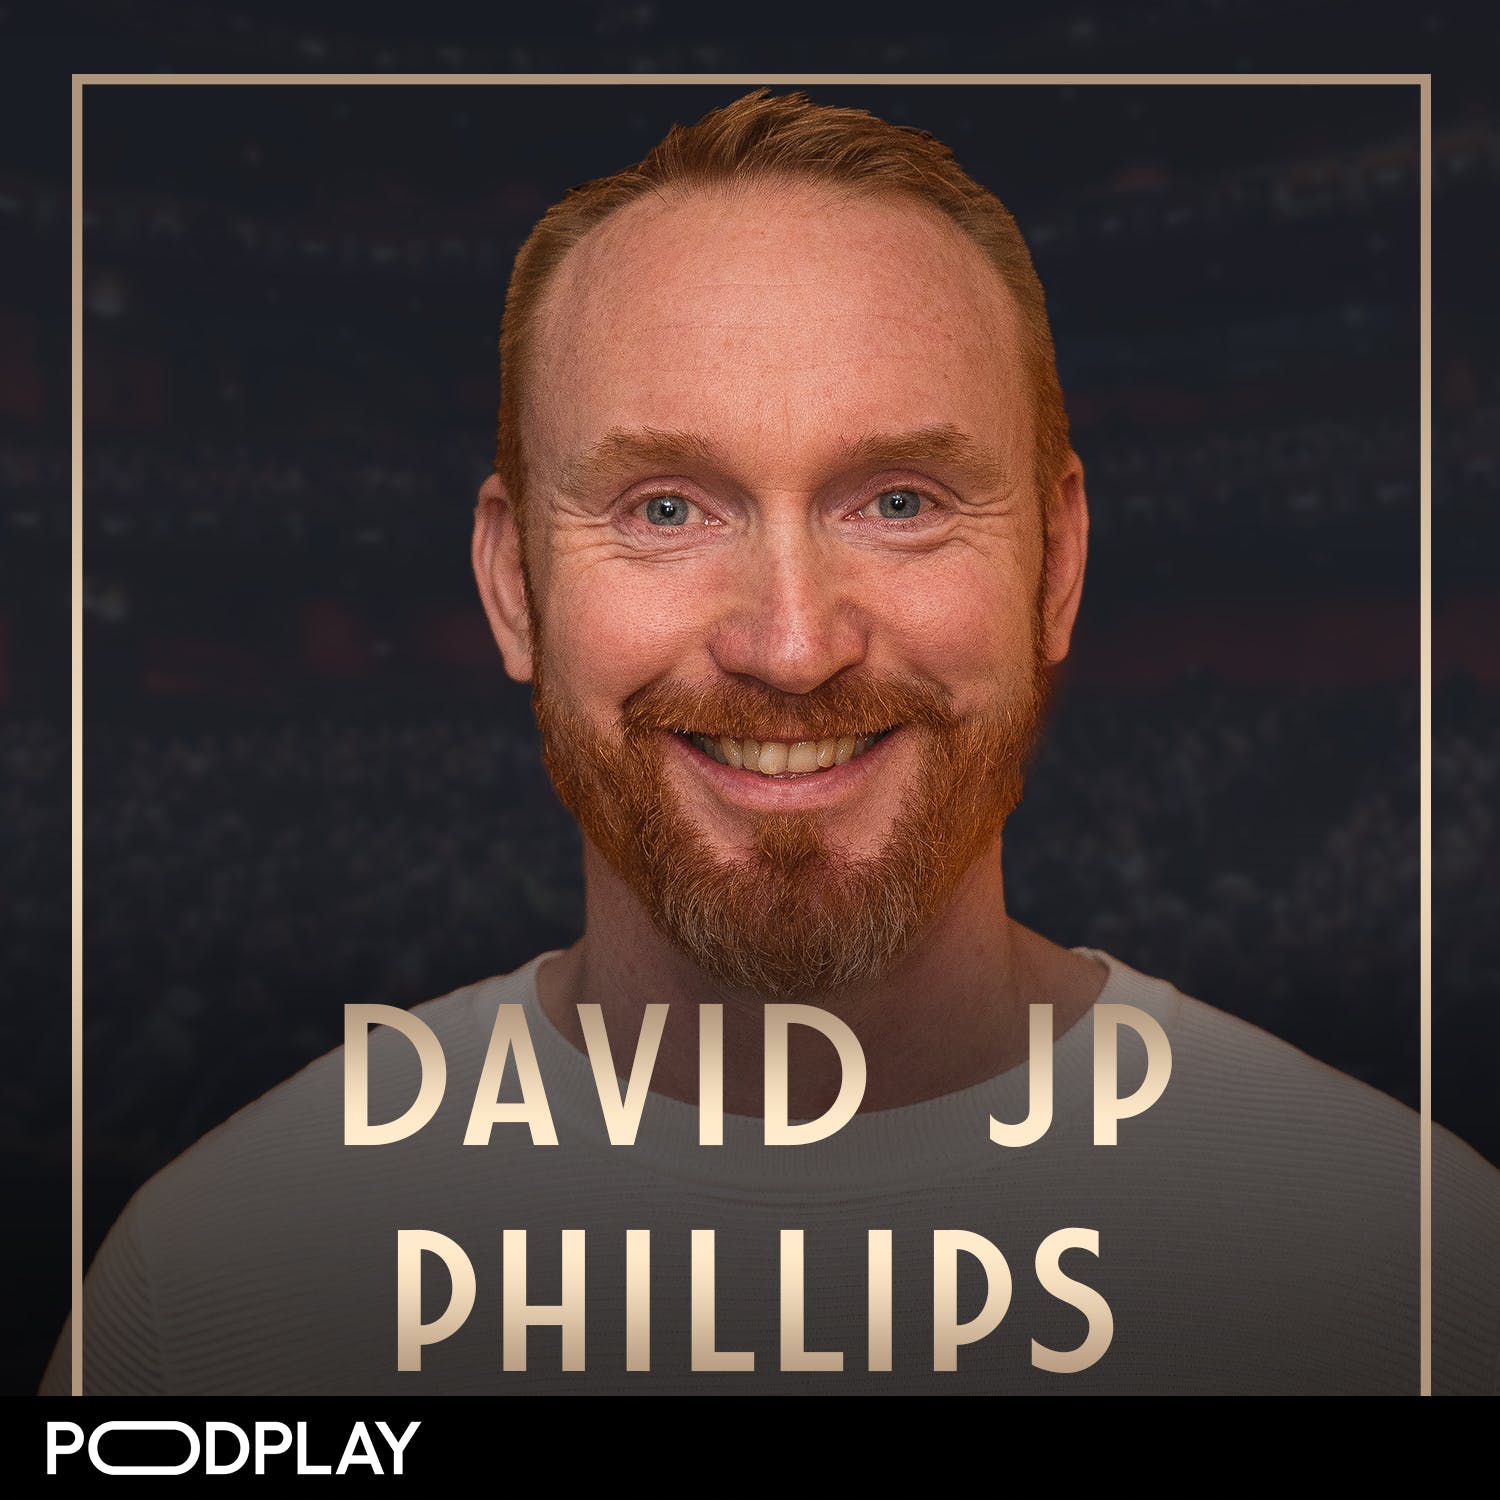 454. David JP Philips - Skapa mer "wow" i livet: priming, kommunikation & hur du älskar dig själv, Original